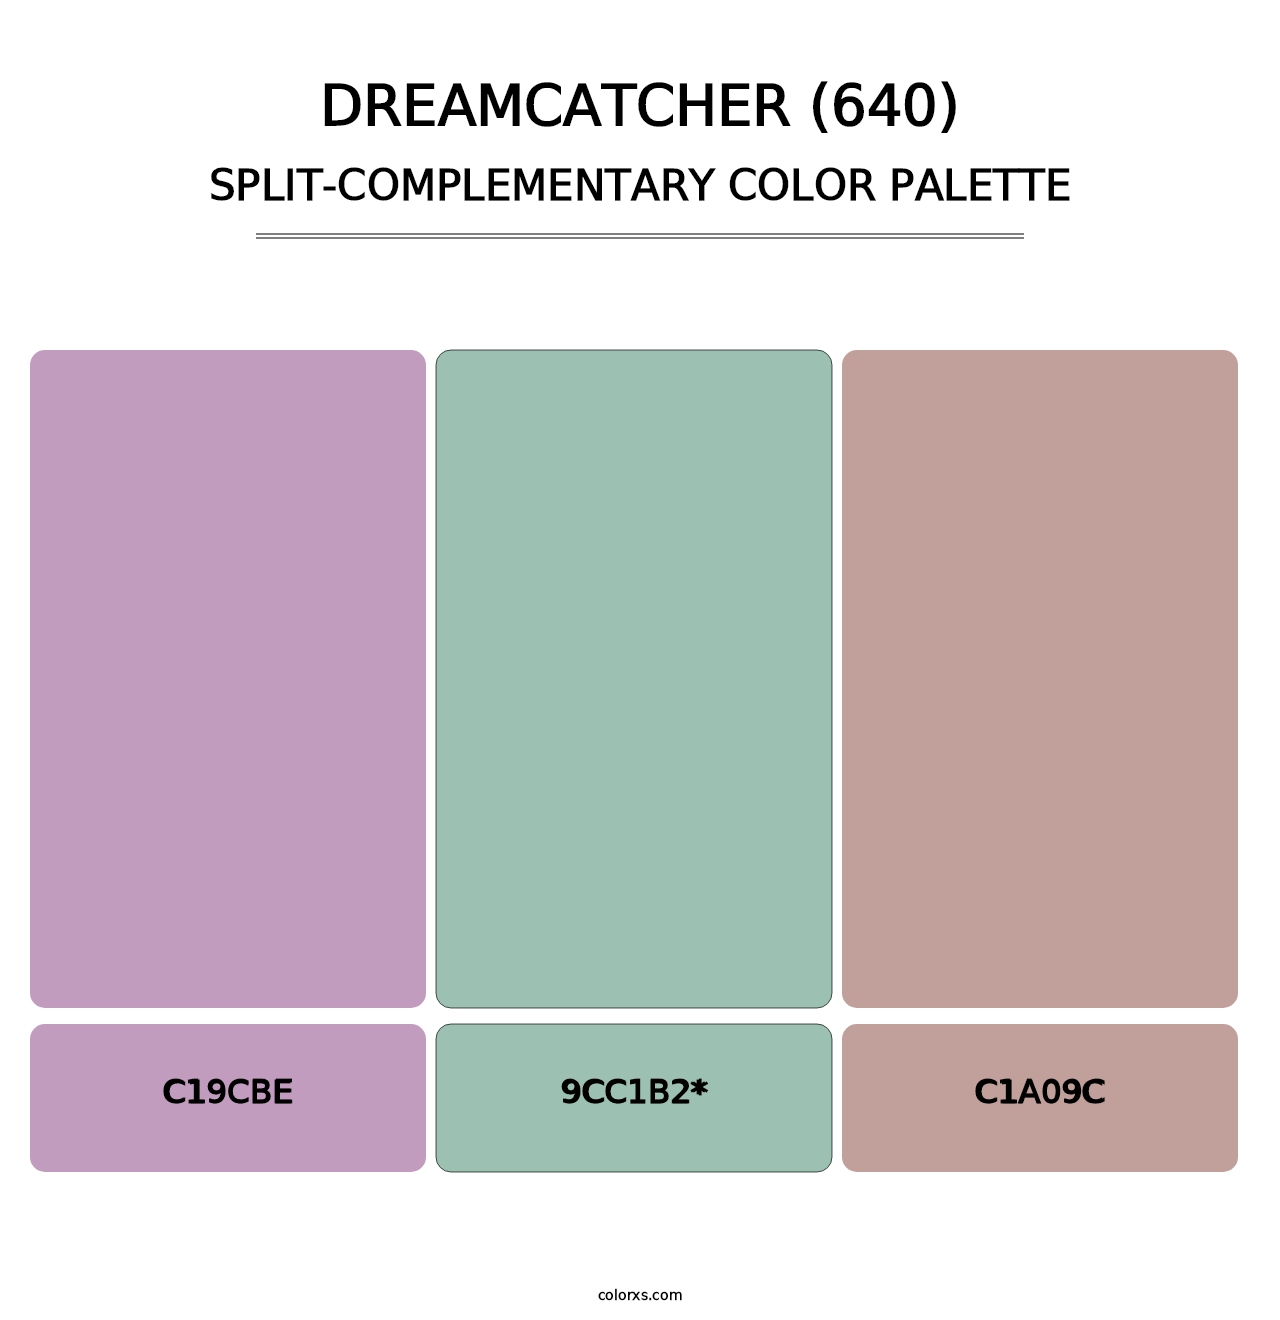 Dreamcatcher (640) - Split-Complementary Color Palette